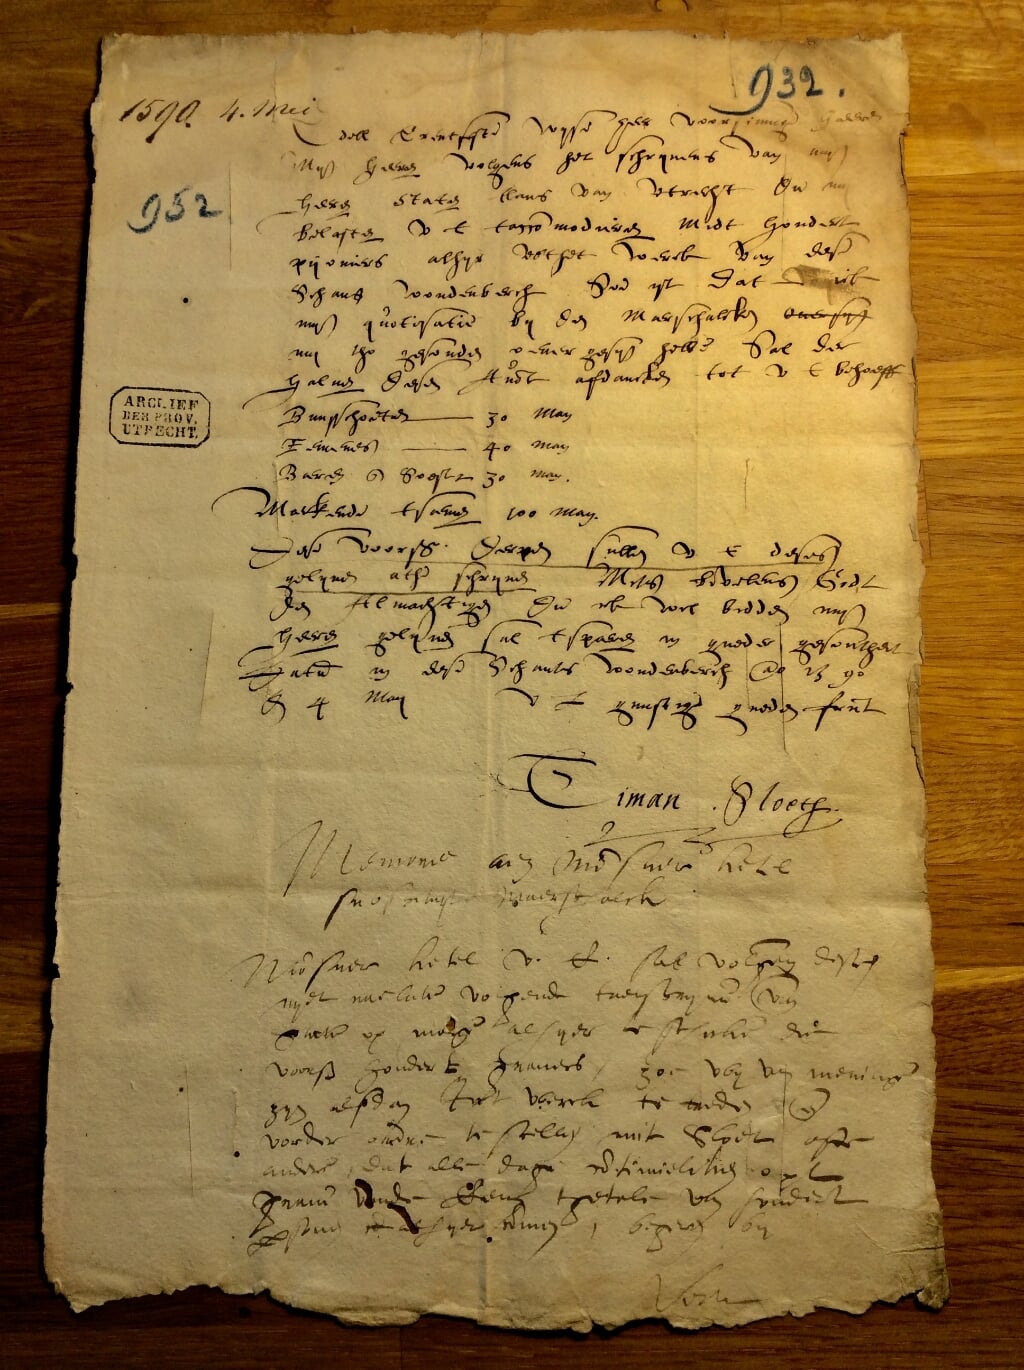 De originele brief van Timan Sloeth betreffende De Schans gericht aan de Maarschalk van Eemland en gedateerd 4 mei 1590.